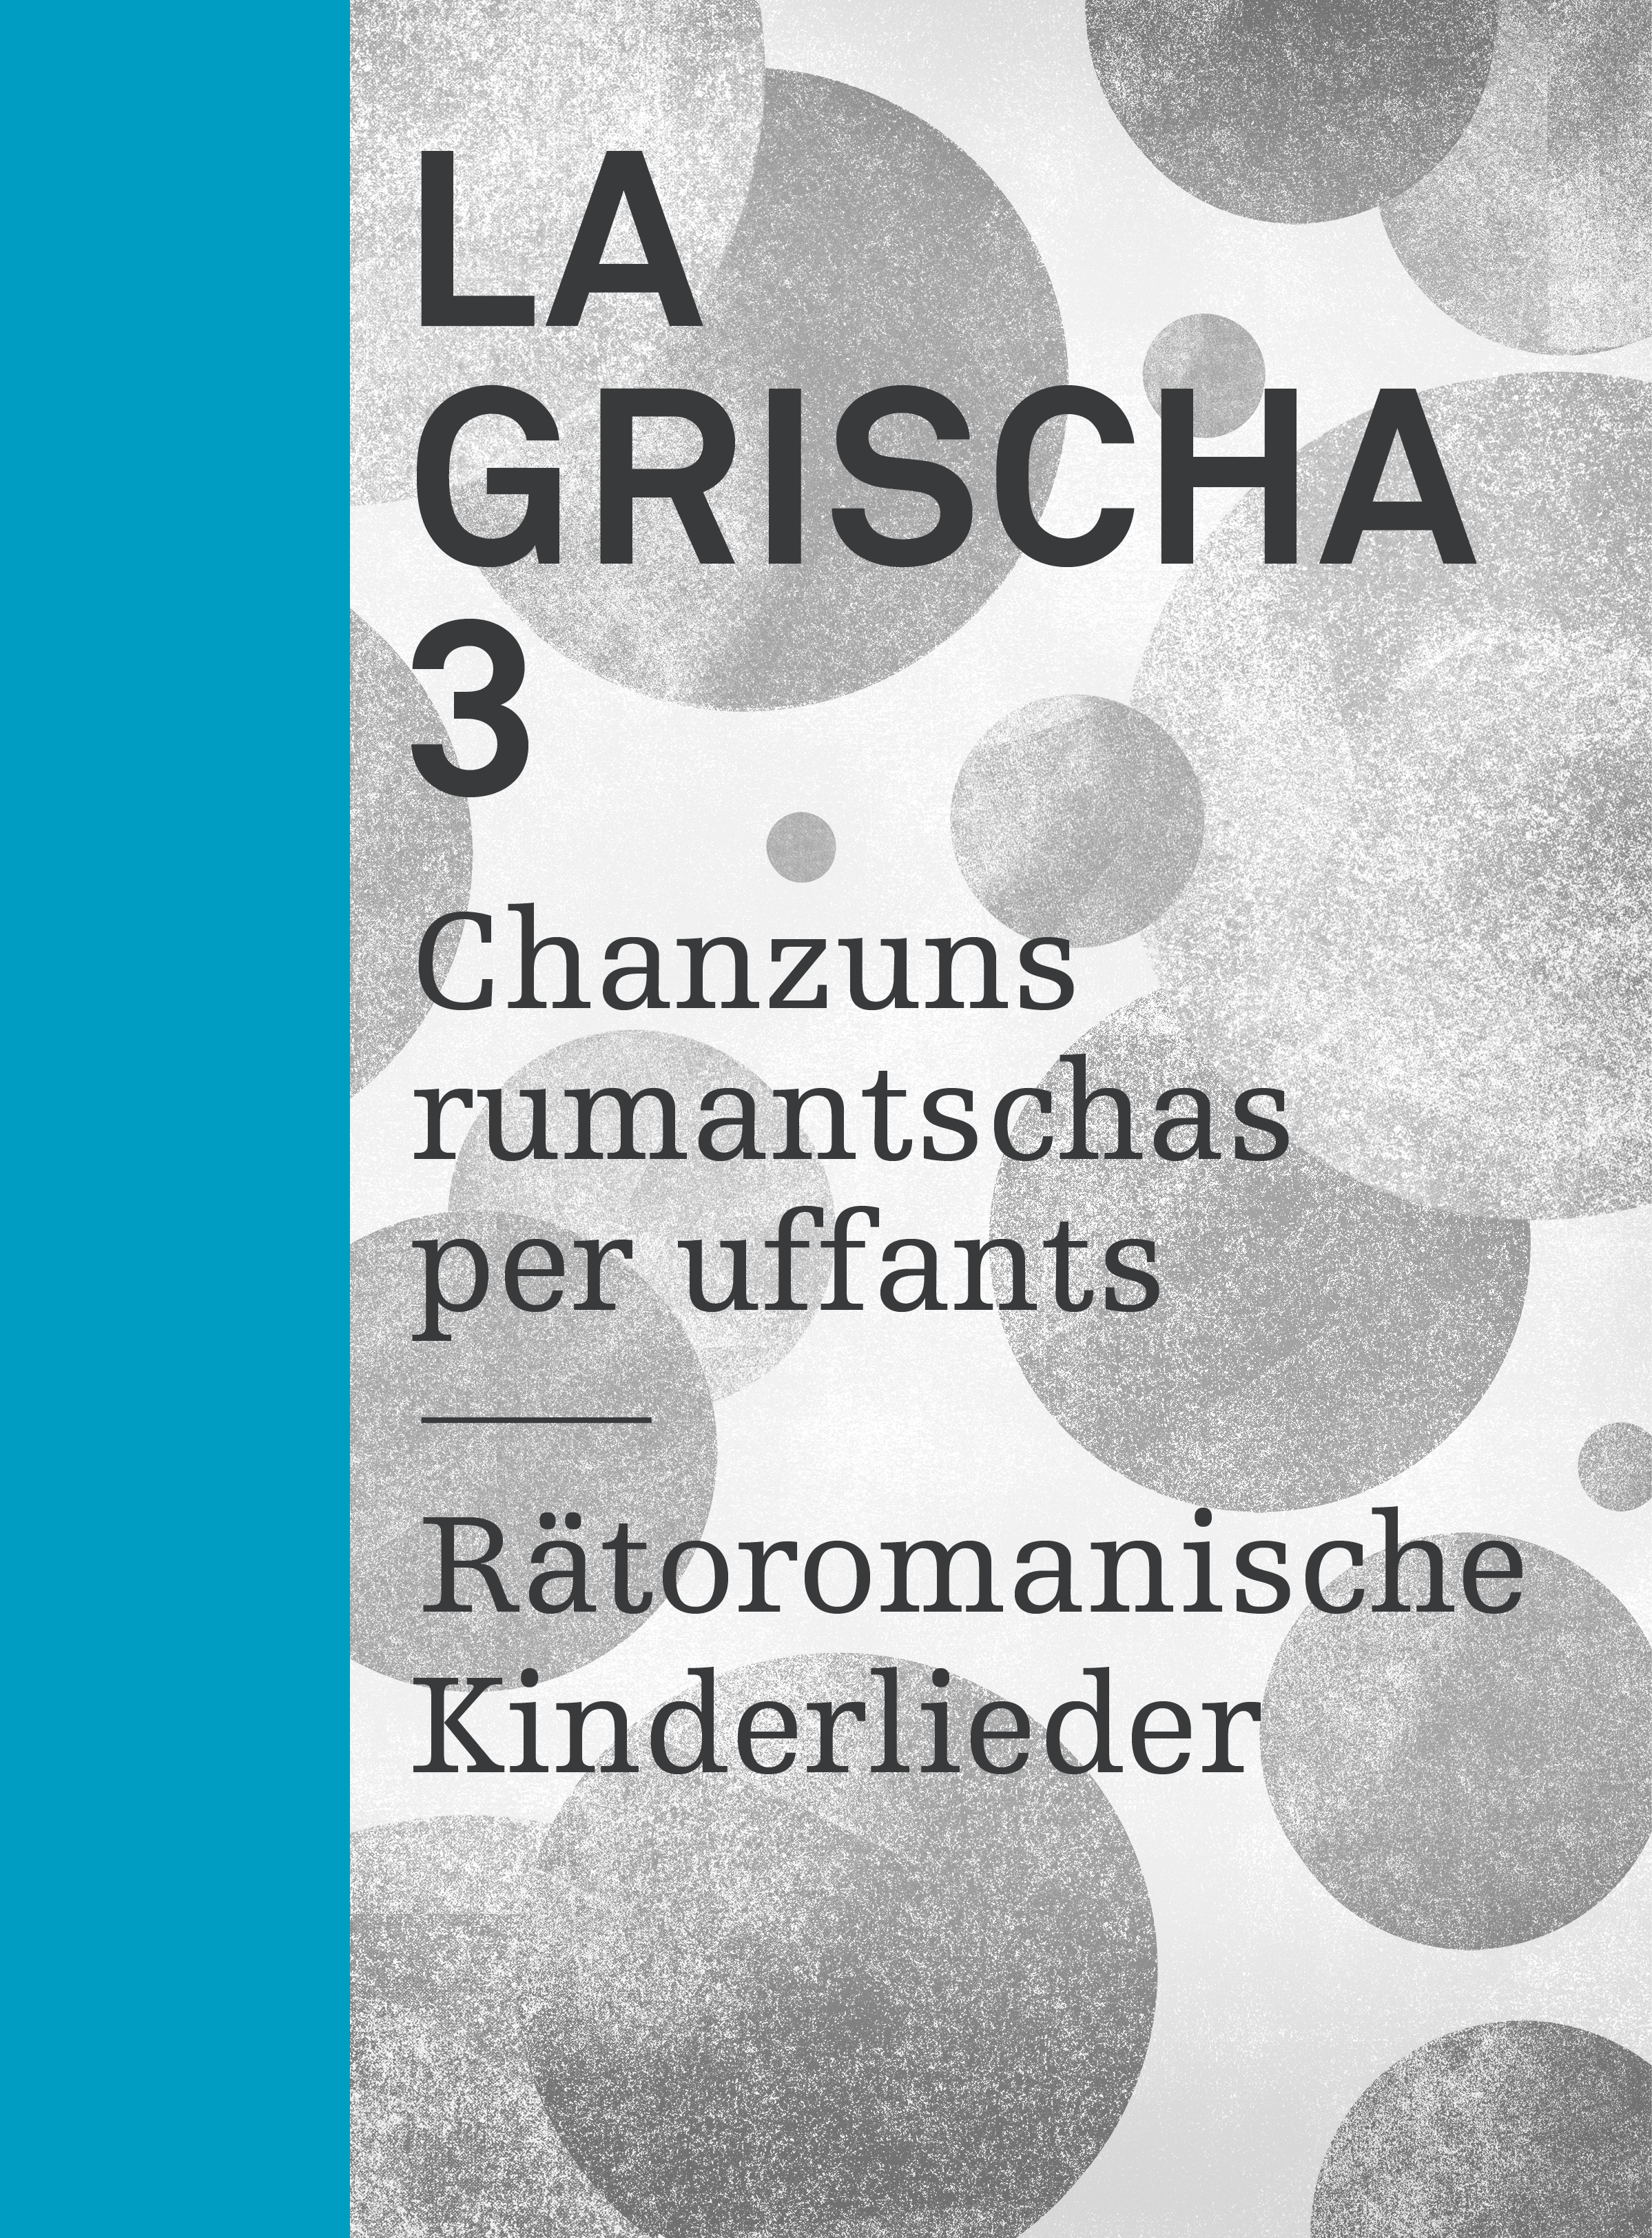 La Grischa 3